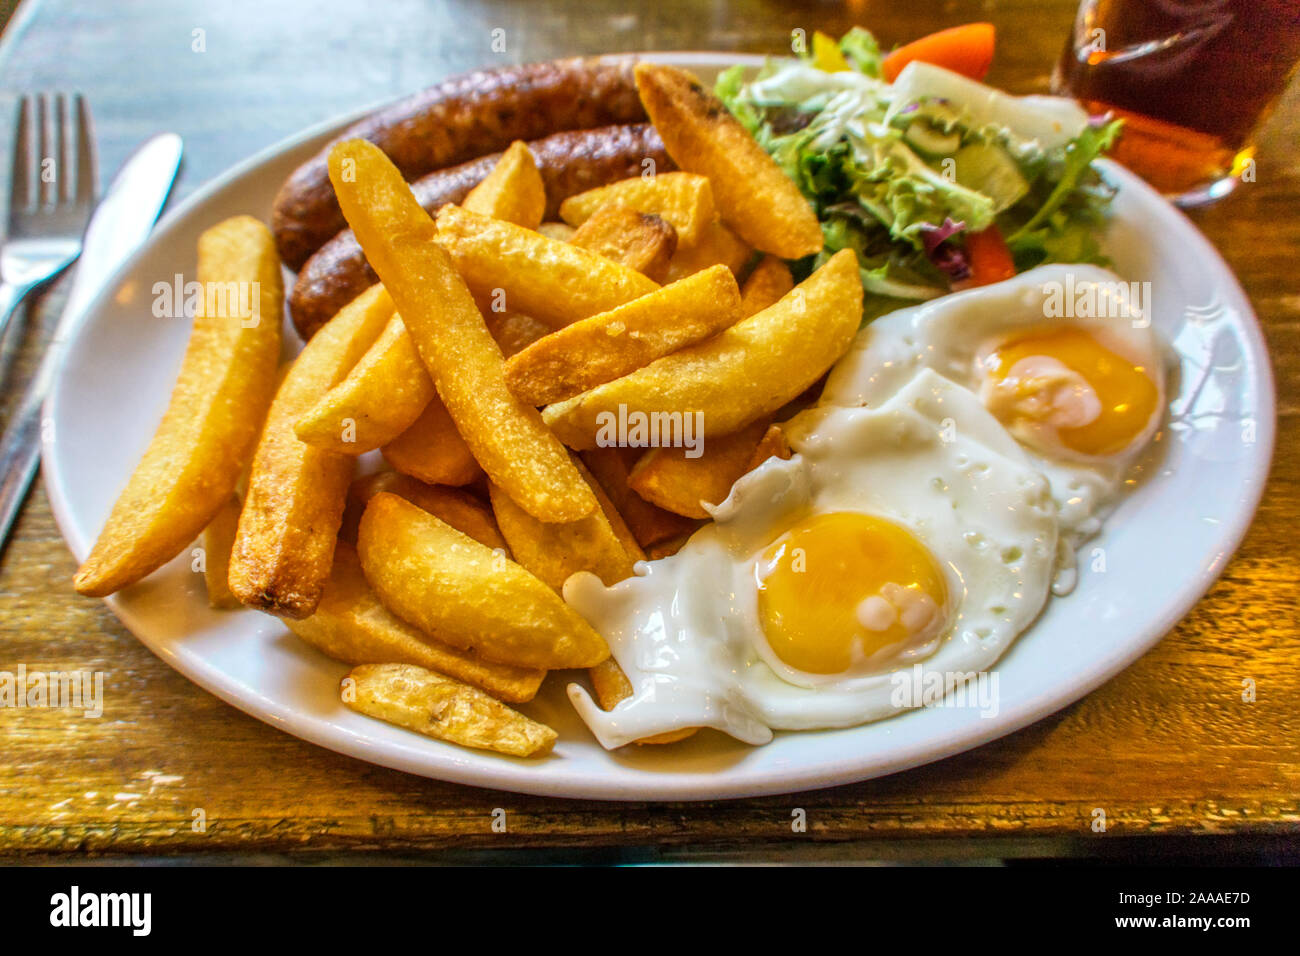 Ein typisches englisches Pub essen Wurst, Eier und Pommes. Stockfoto